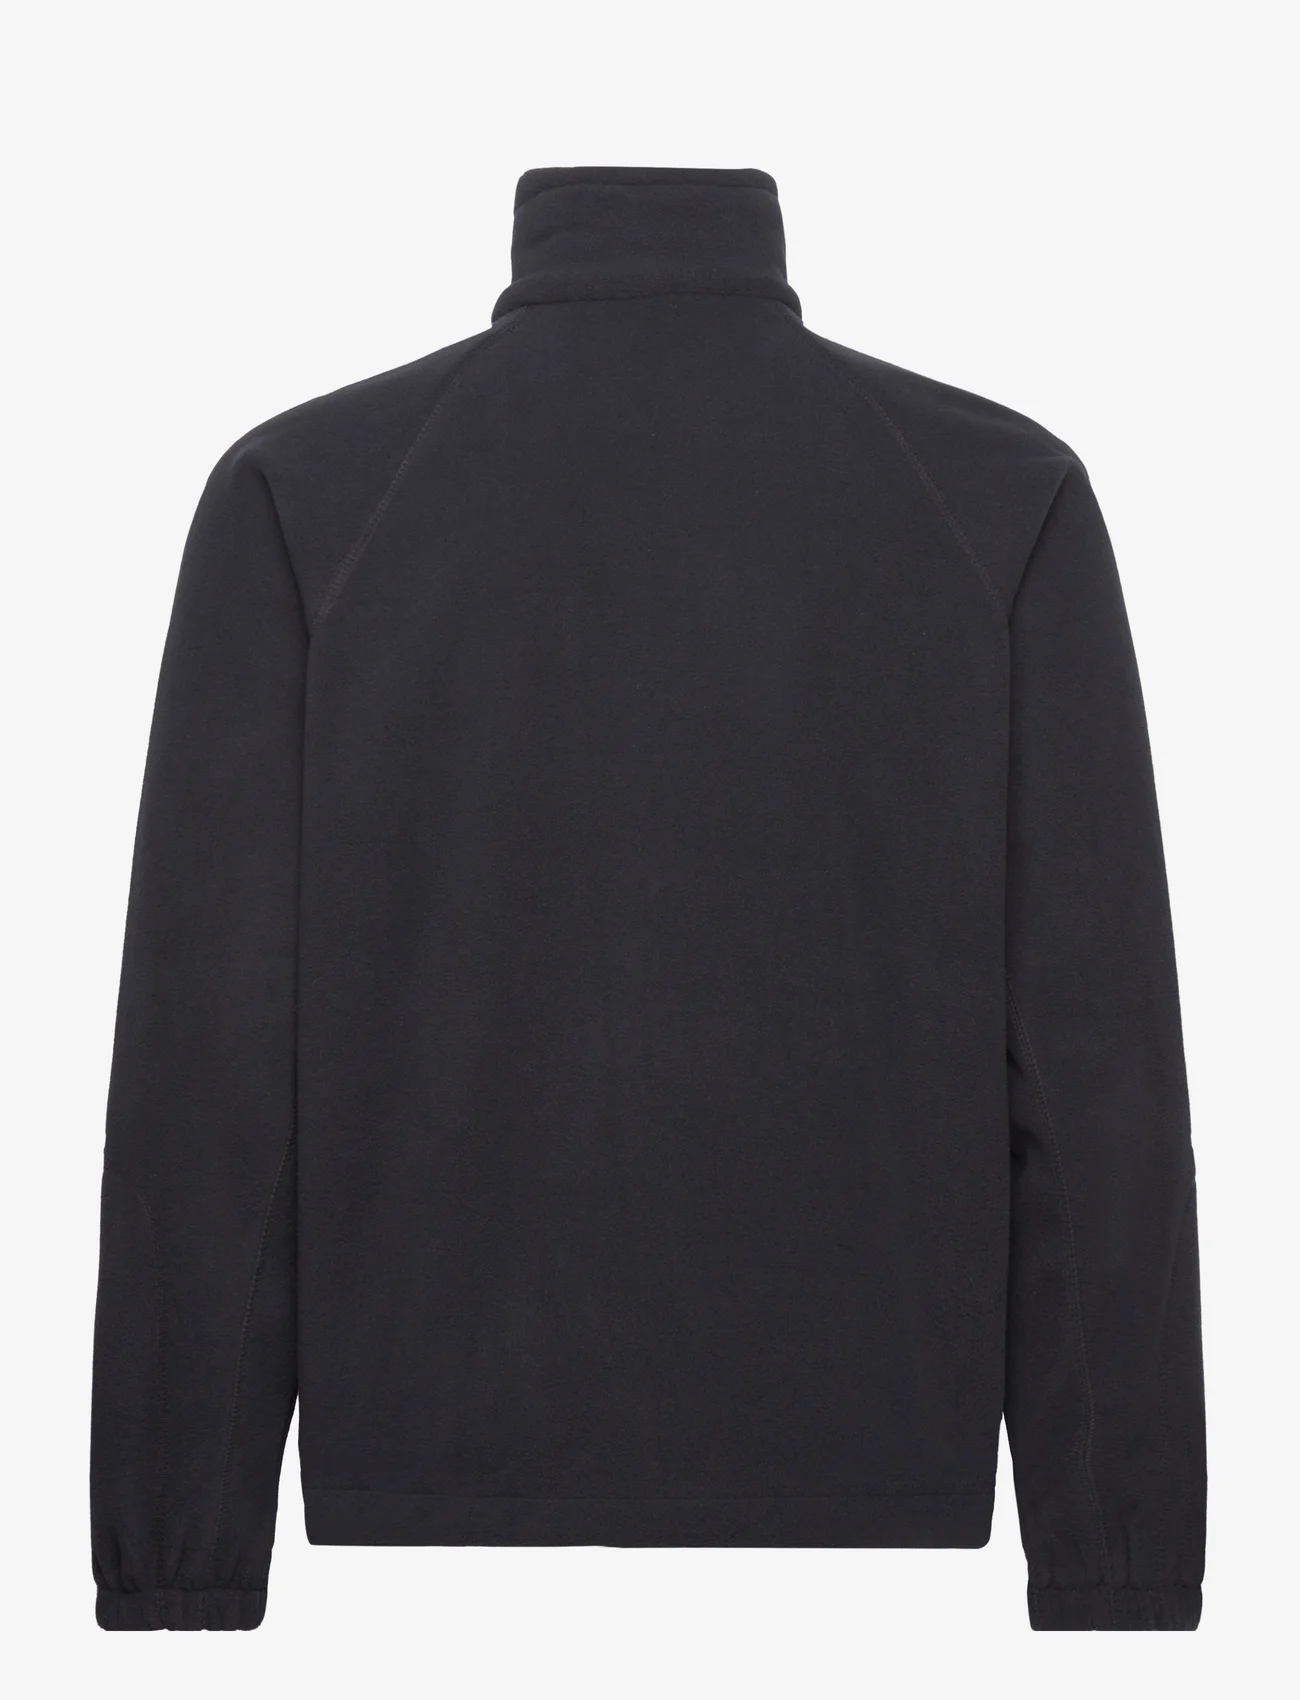 Columbia Sportswear - Fast Trek II Full Zip Fleece - mid layer jackets - black - 1